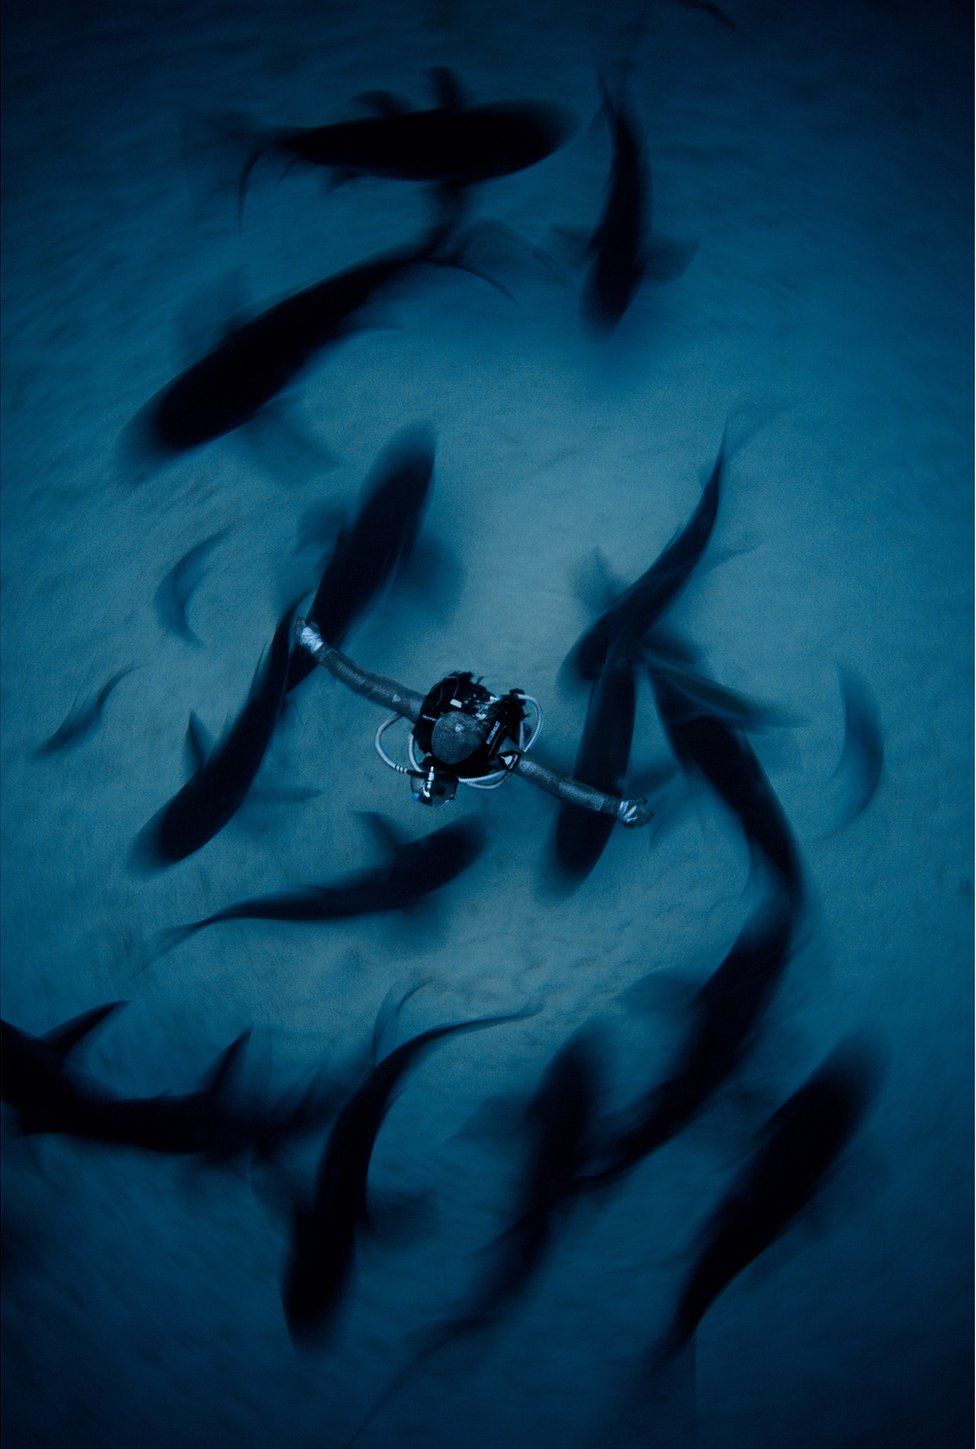 Shark behaviourist Cristina Zenato surrounded by sharks in The Bahamas